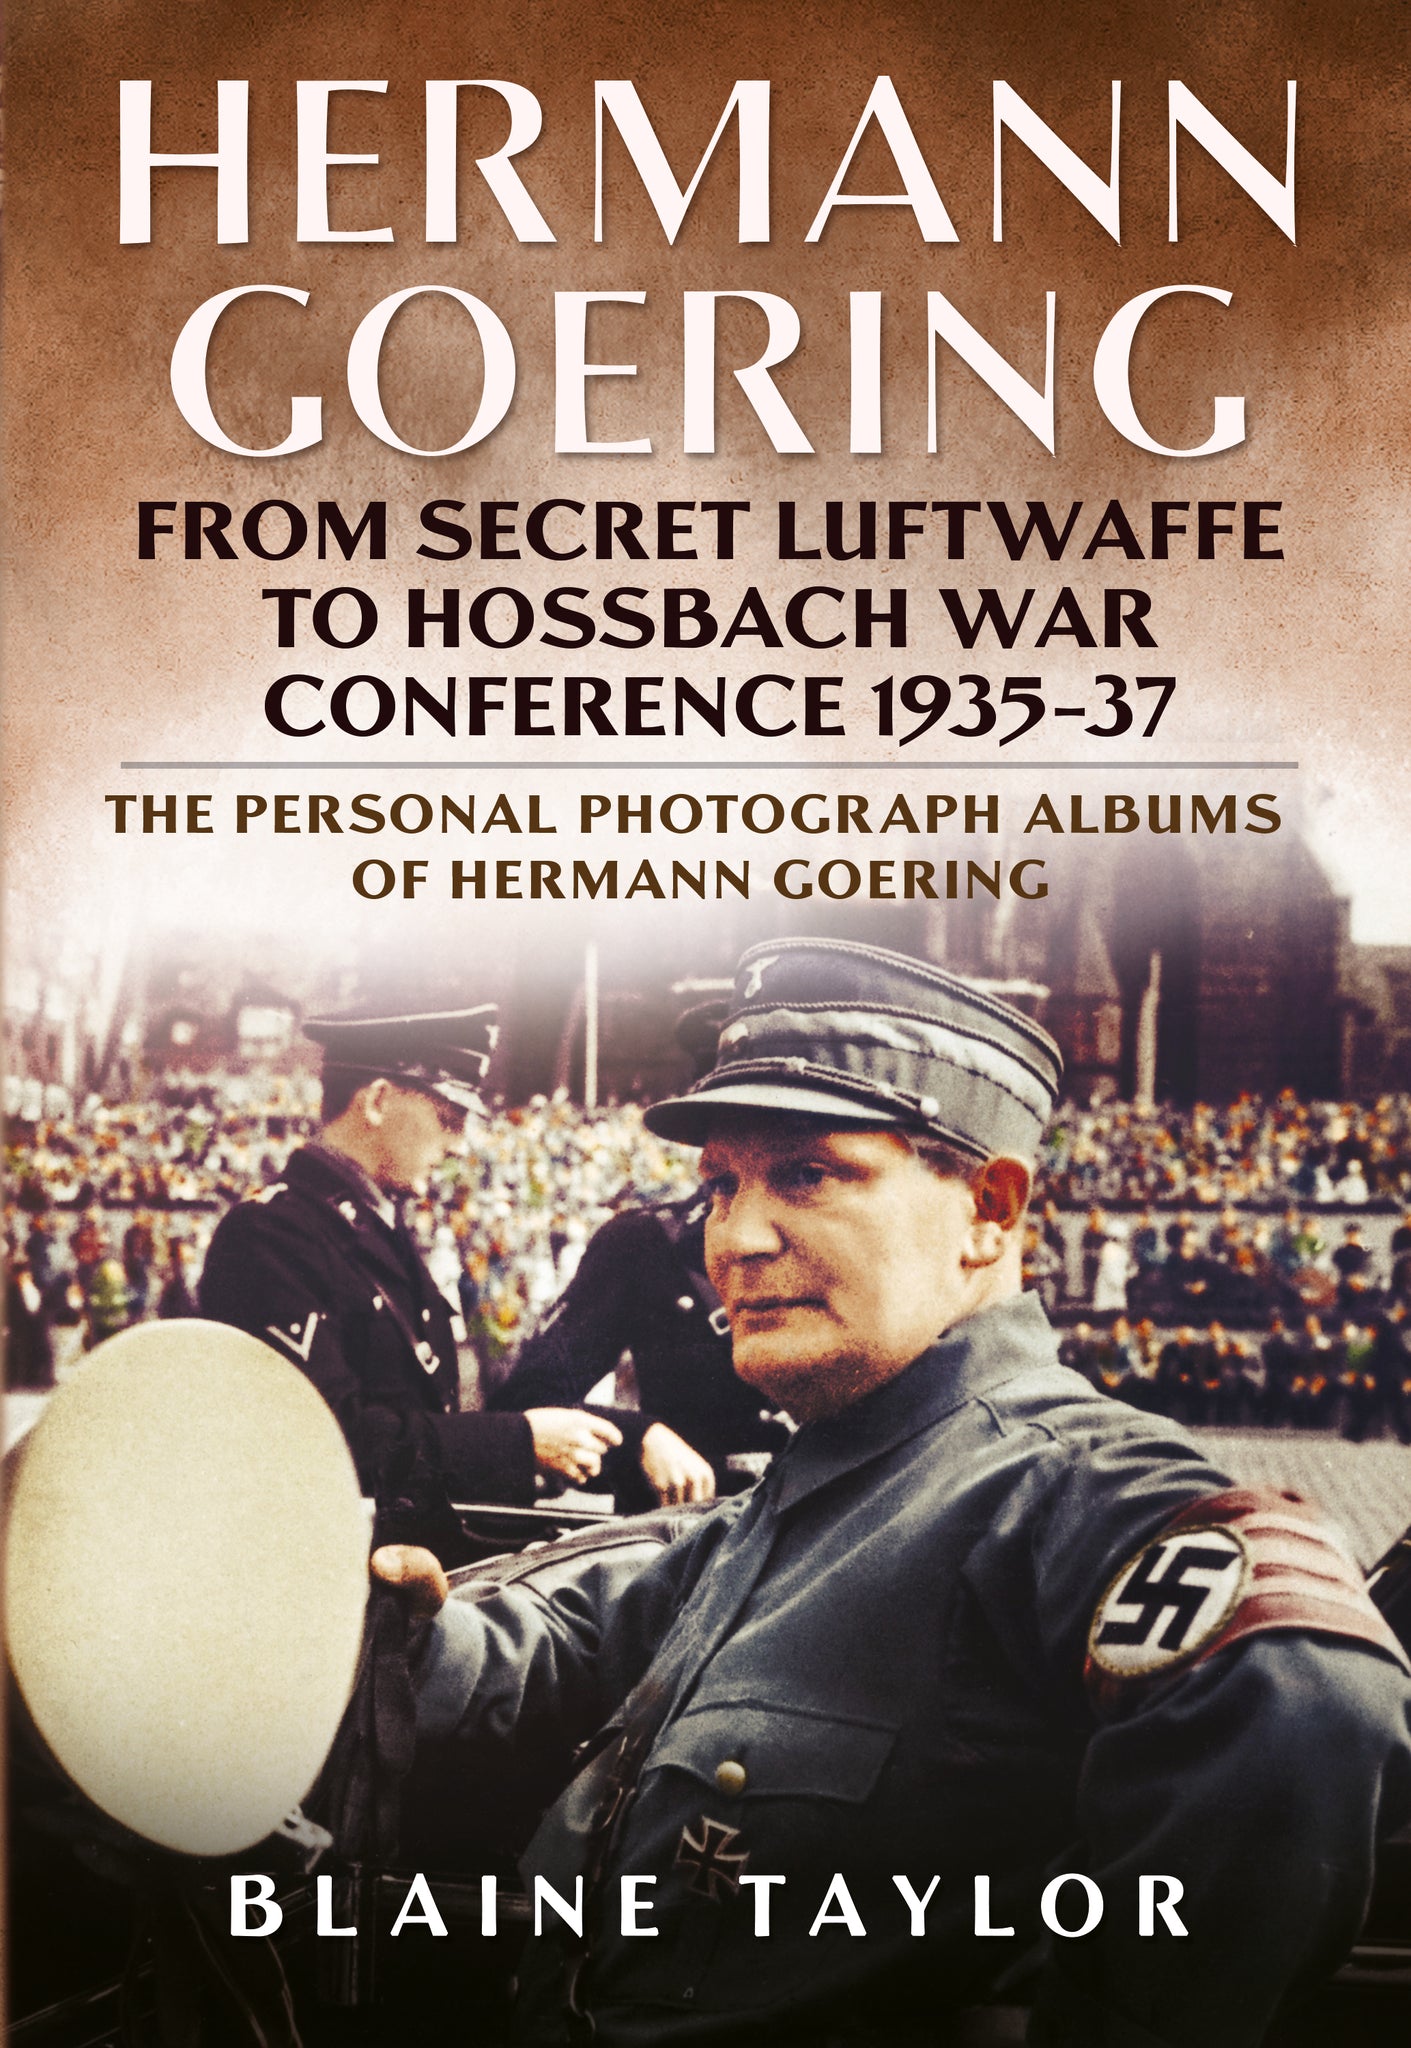 Hermann Goering: From Secret Luftwaffe to Hossbach War Conference 1935-37 (Volume 3)